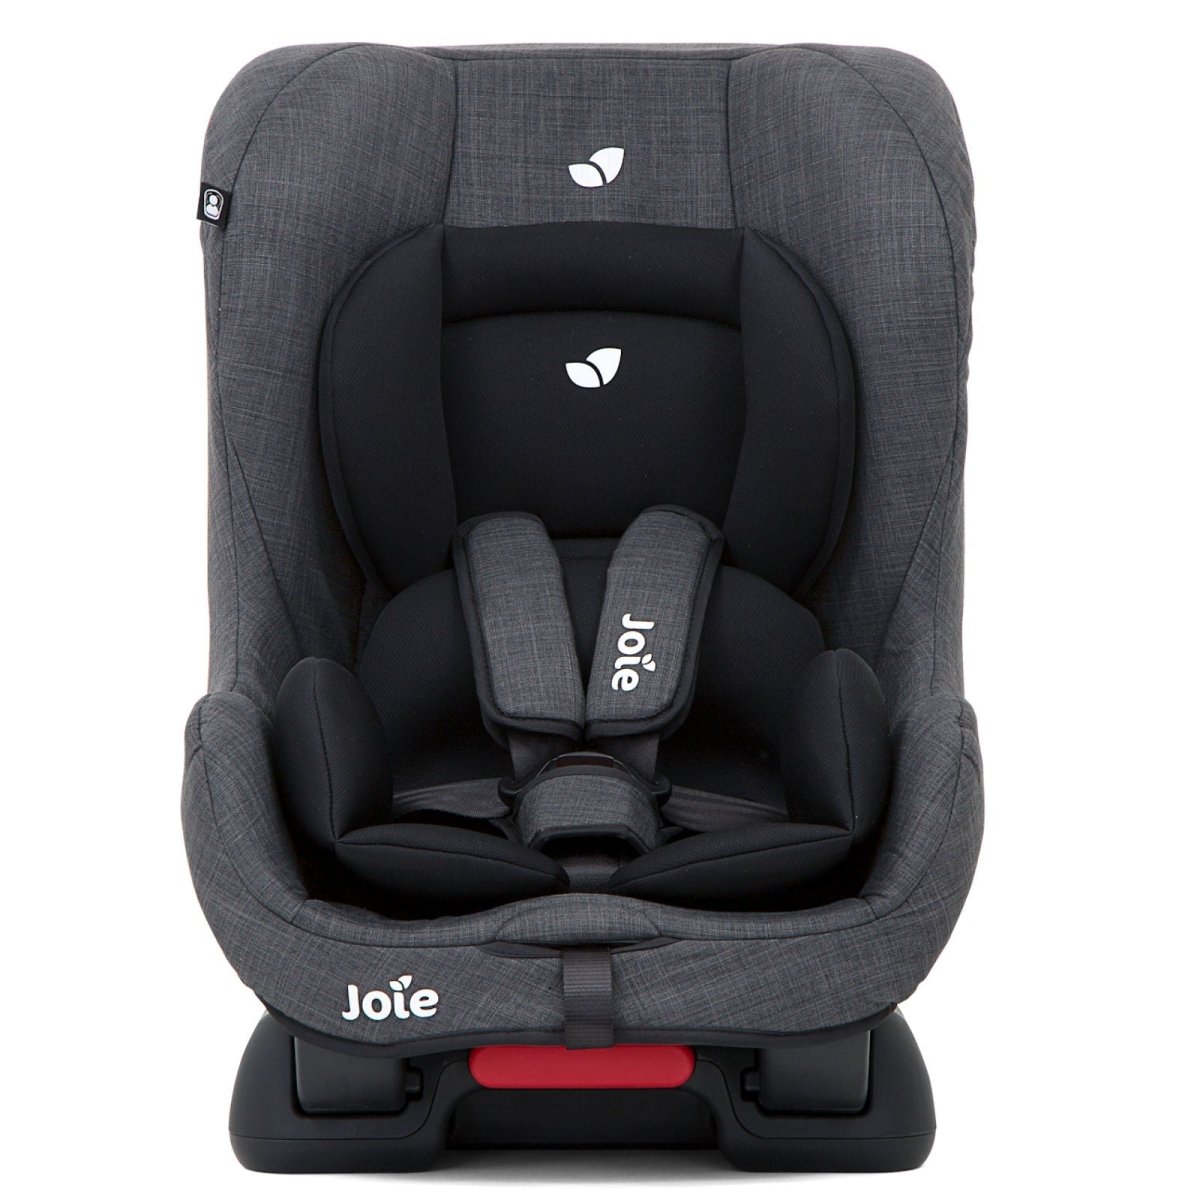 Joie Tilt Pavement Baby Car Seat - C0902GCPAV000